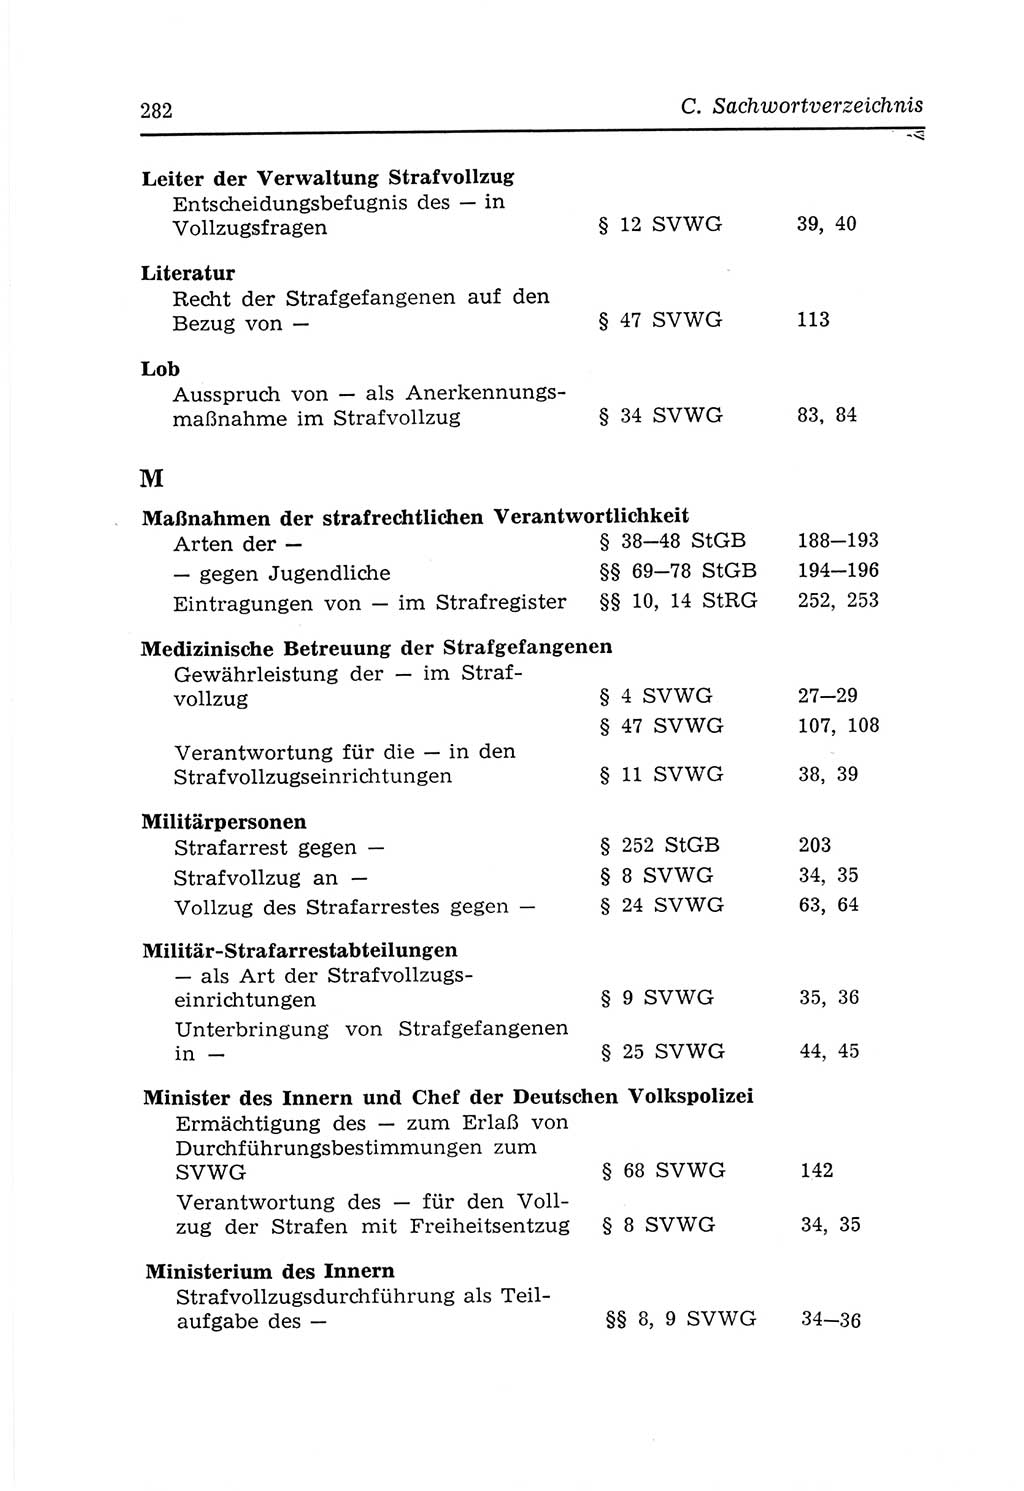 Strafvollzugs- und Wiedereingliederungsgesetz (SVWG) der Deutschen Demokratischen Republik (DDR) 1968, Seite 282 (SVWG DDR 1968, S. 282)